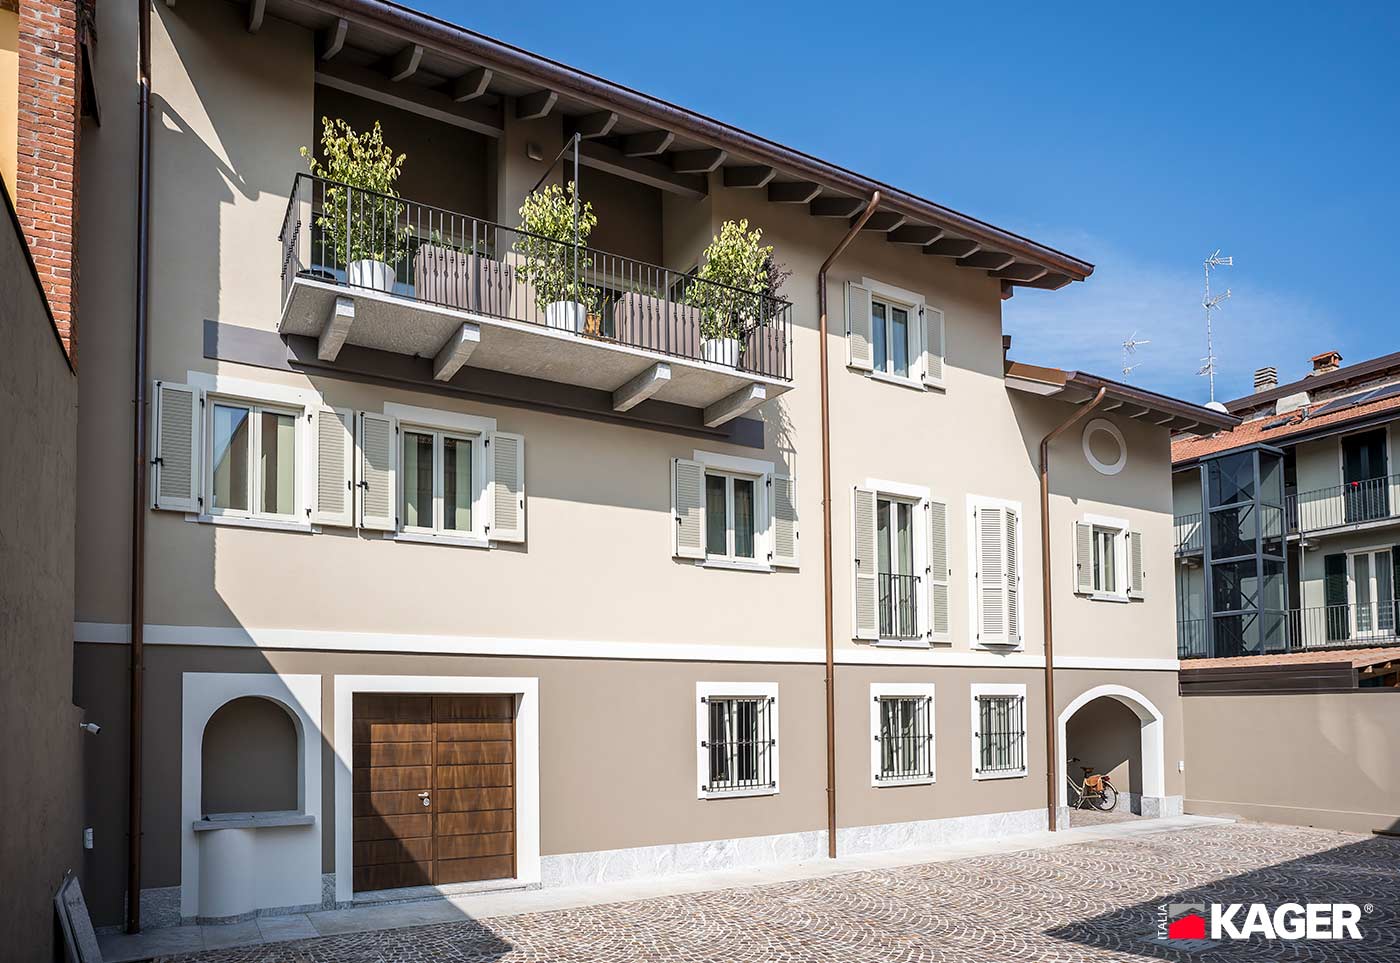 Casa-in-legno-Kager-Italia-Borgomanero-facciata